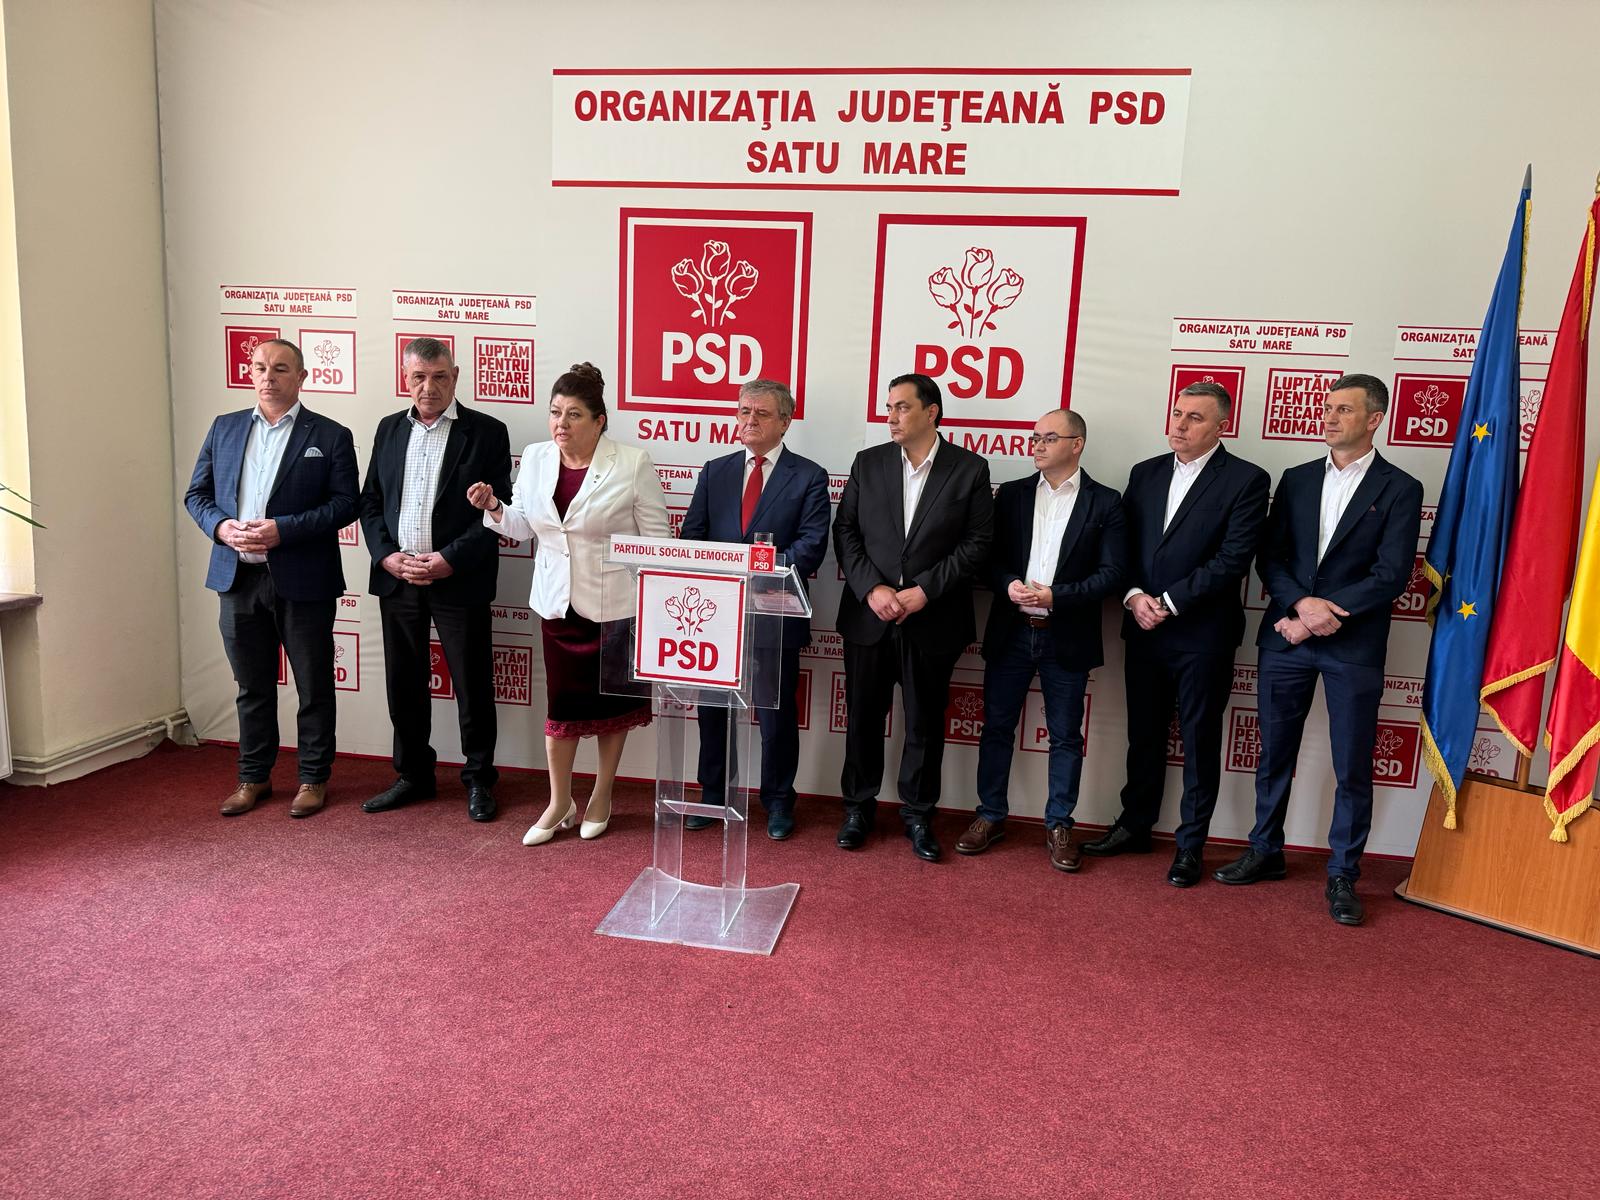 Primarii din județul Satu Mare: Tășnad, Pomi, Tarna Mare și Căuaș au trecut la PSD